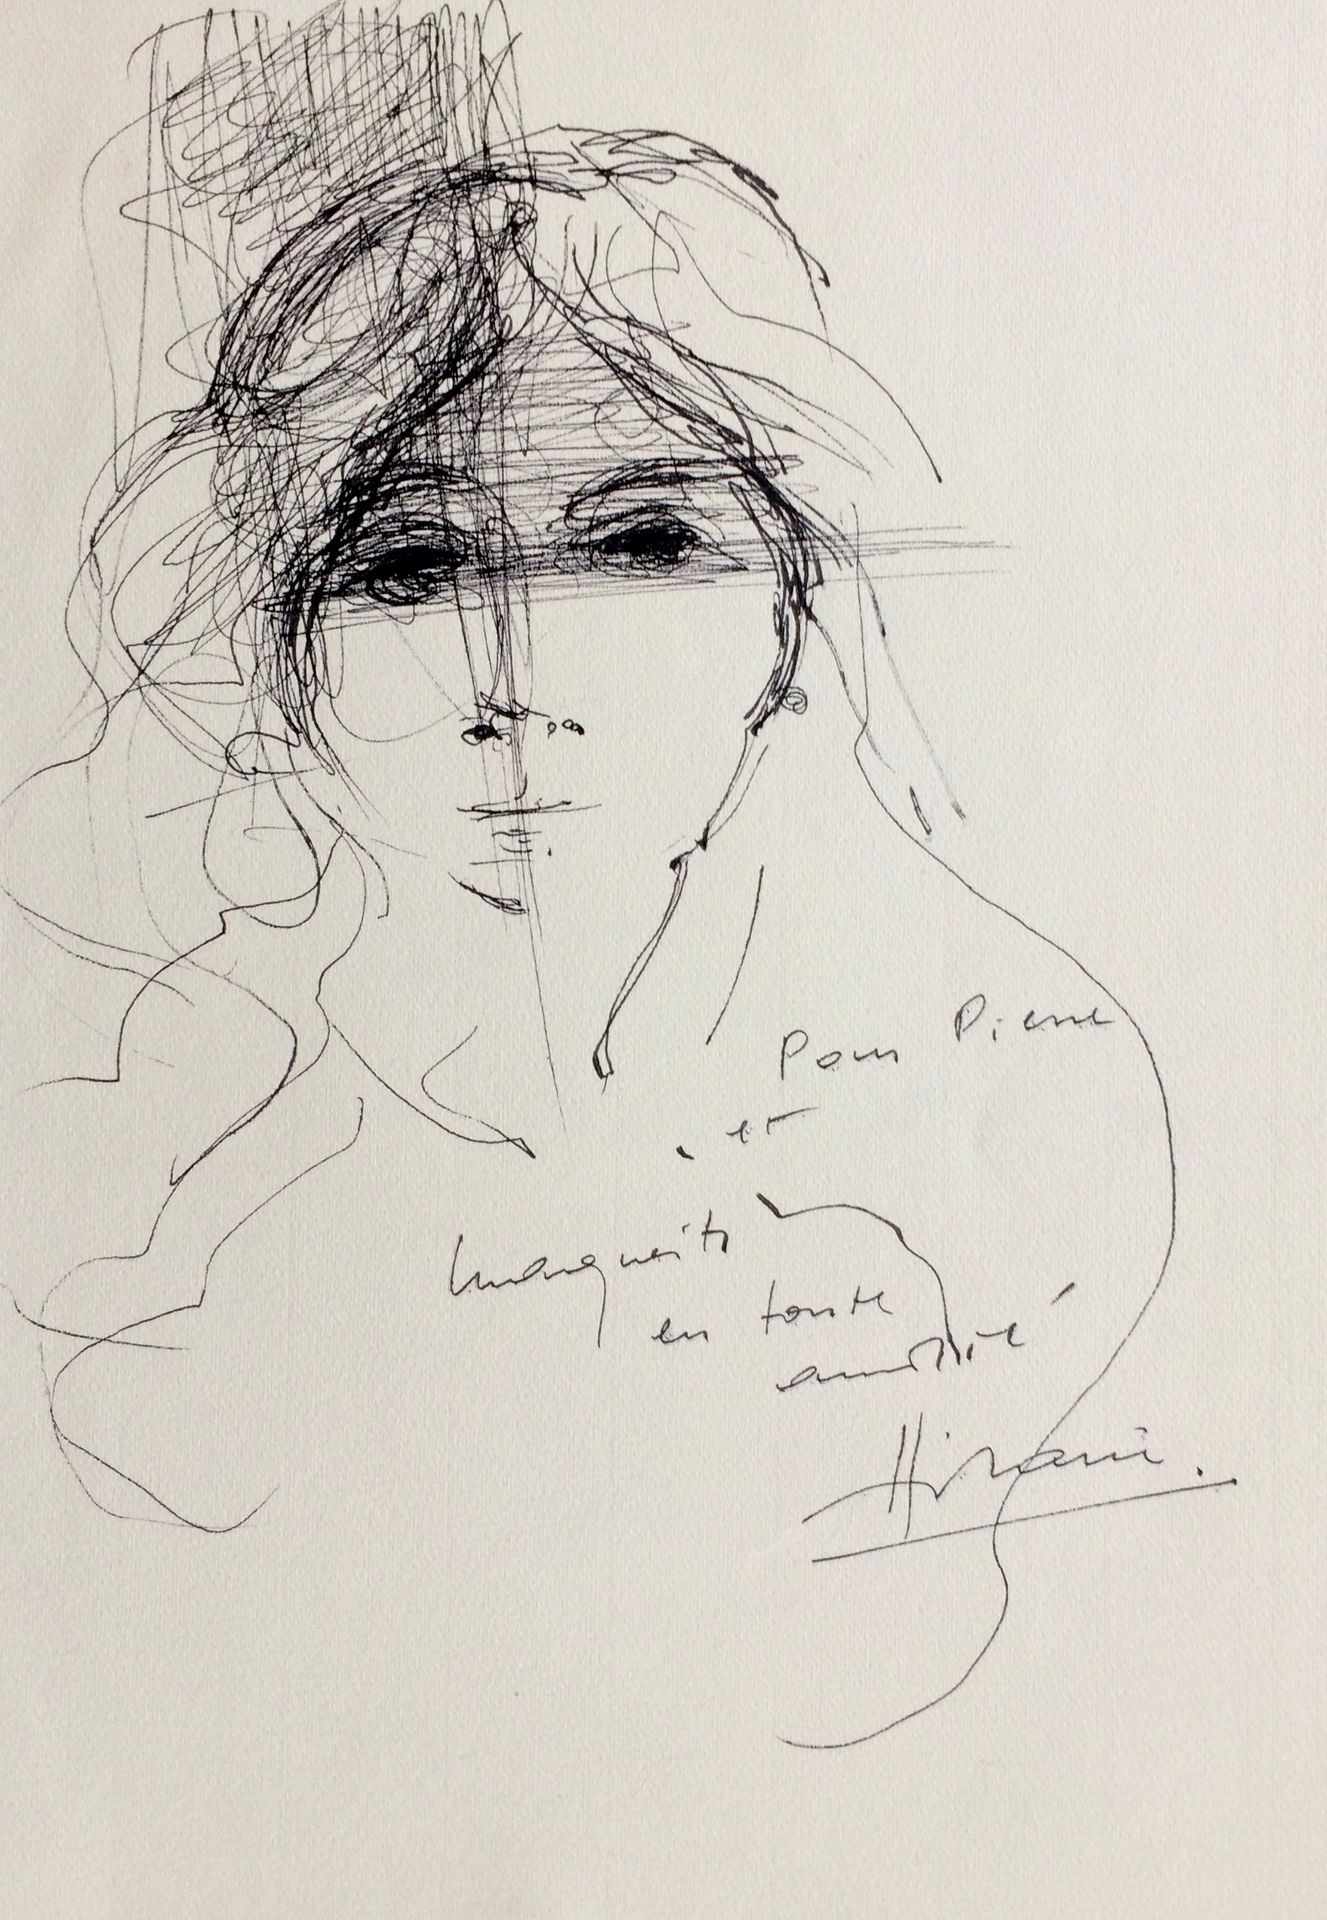 Camille HILAIRE Camille HILAIRE

Portrait, 1975

 

Dessin original à l'encre si&hellip;